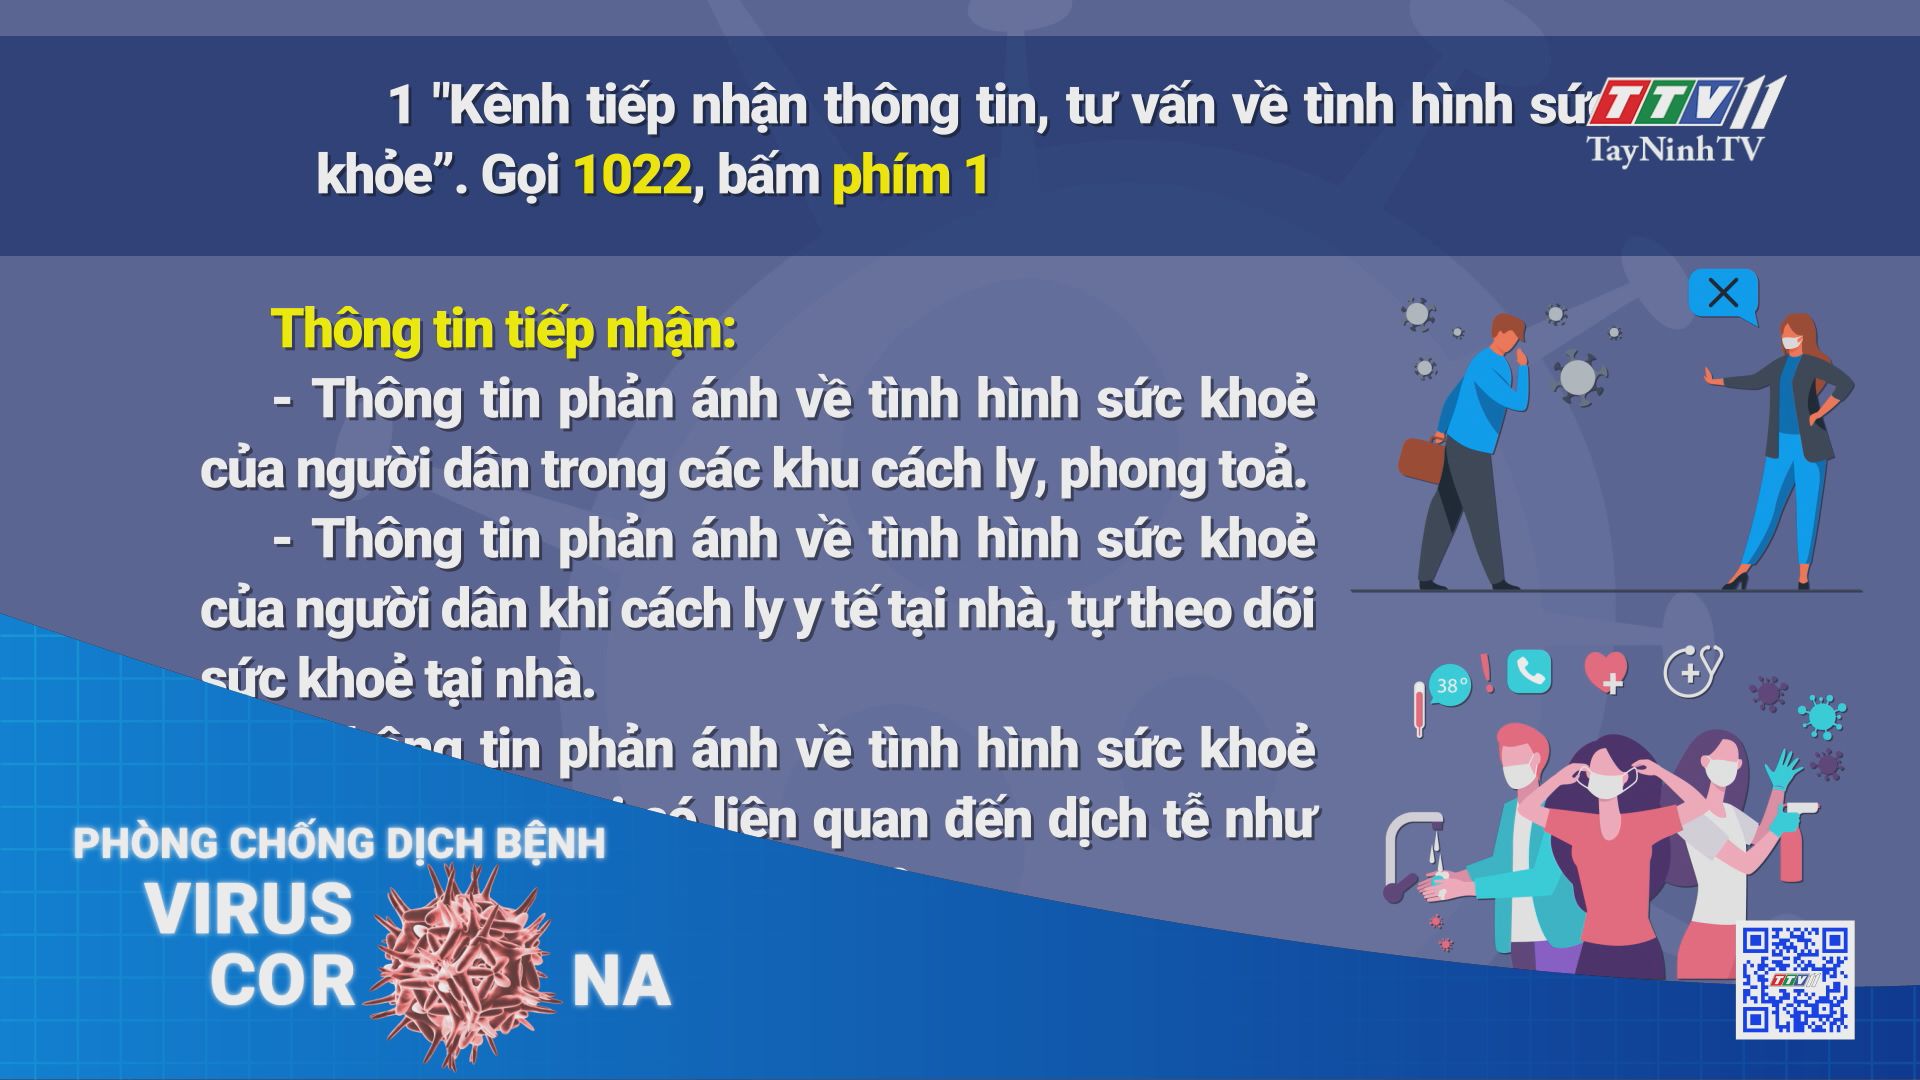 Triển khai kênh tiếp nhận phản ánh về tình hình dịch bệnh Covid-19 trên Tổng đài 1022 tỉnh Tây Ninh | THÔNG TIN DỊCH COVID-19 | TayNinhTV